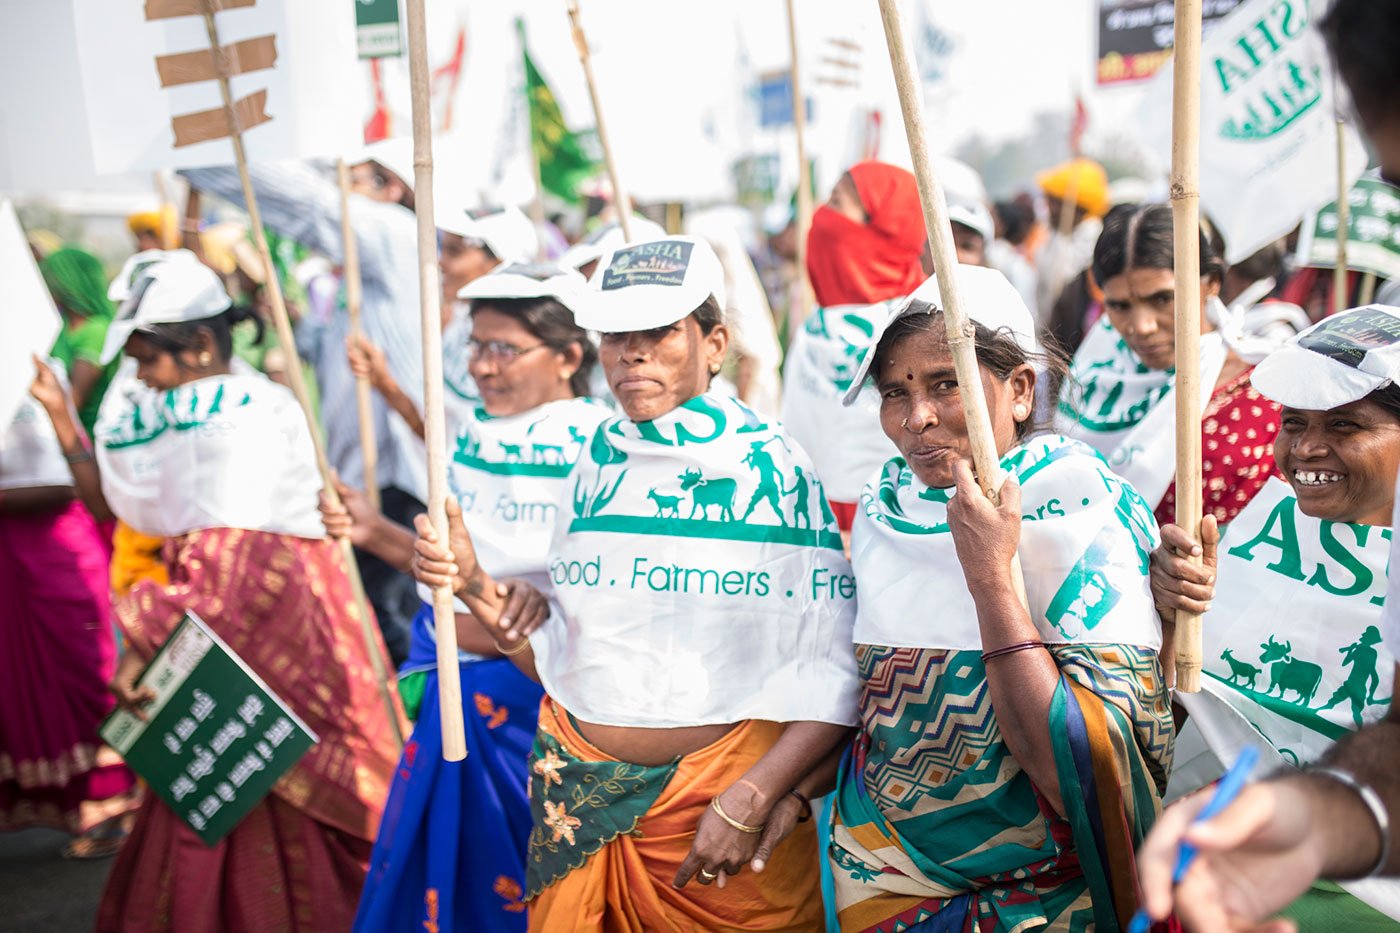 Women farmers fro MP marching from Gurudwara Shri Bala Sahibji to Ramlila